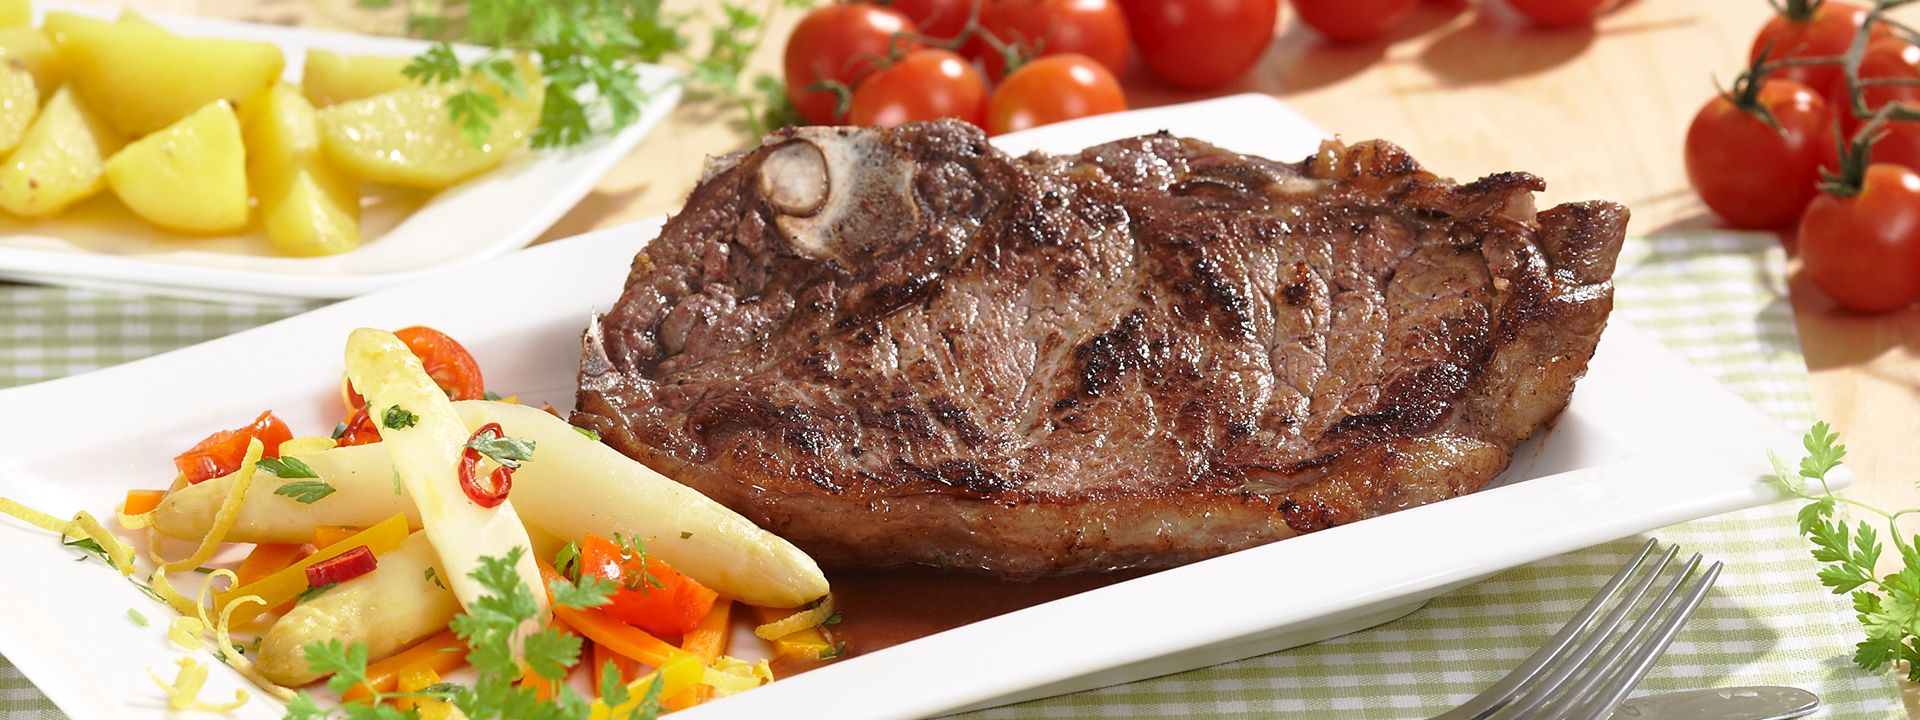 Angerichtes Gericht für das Rezept Rump-Steak mit Spargelgemüse